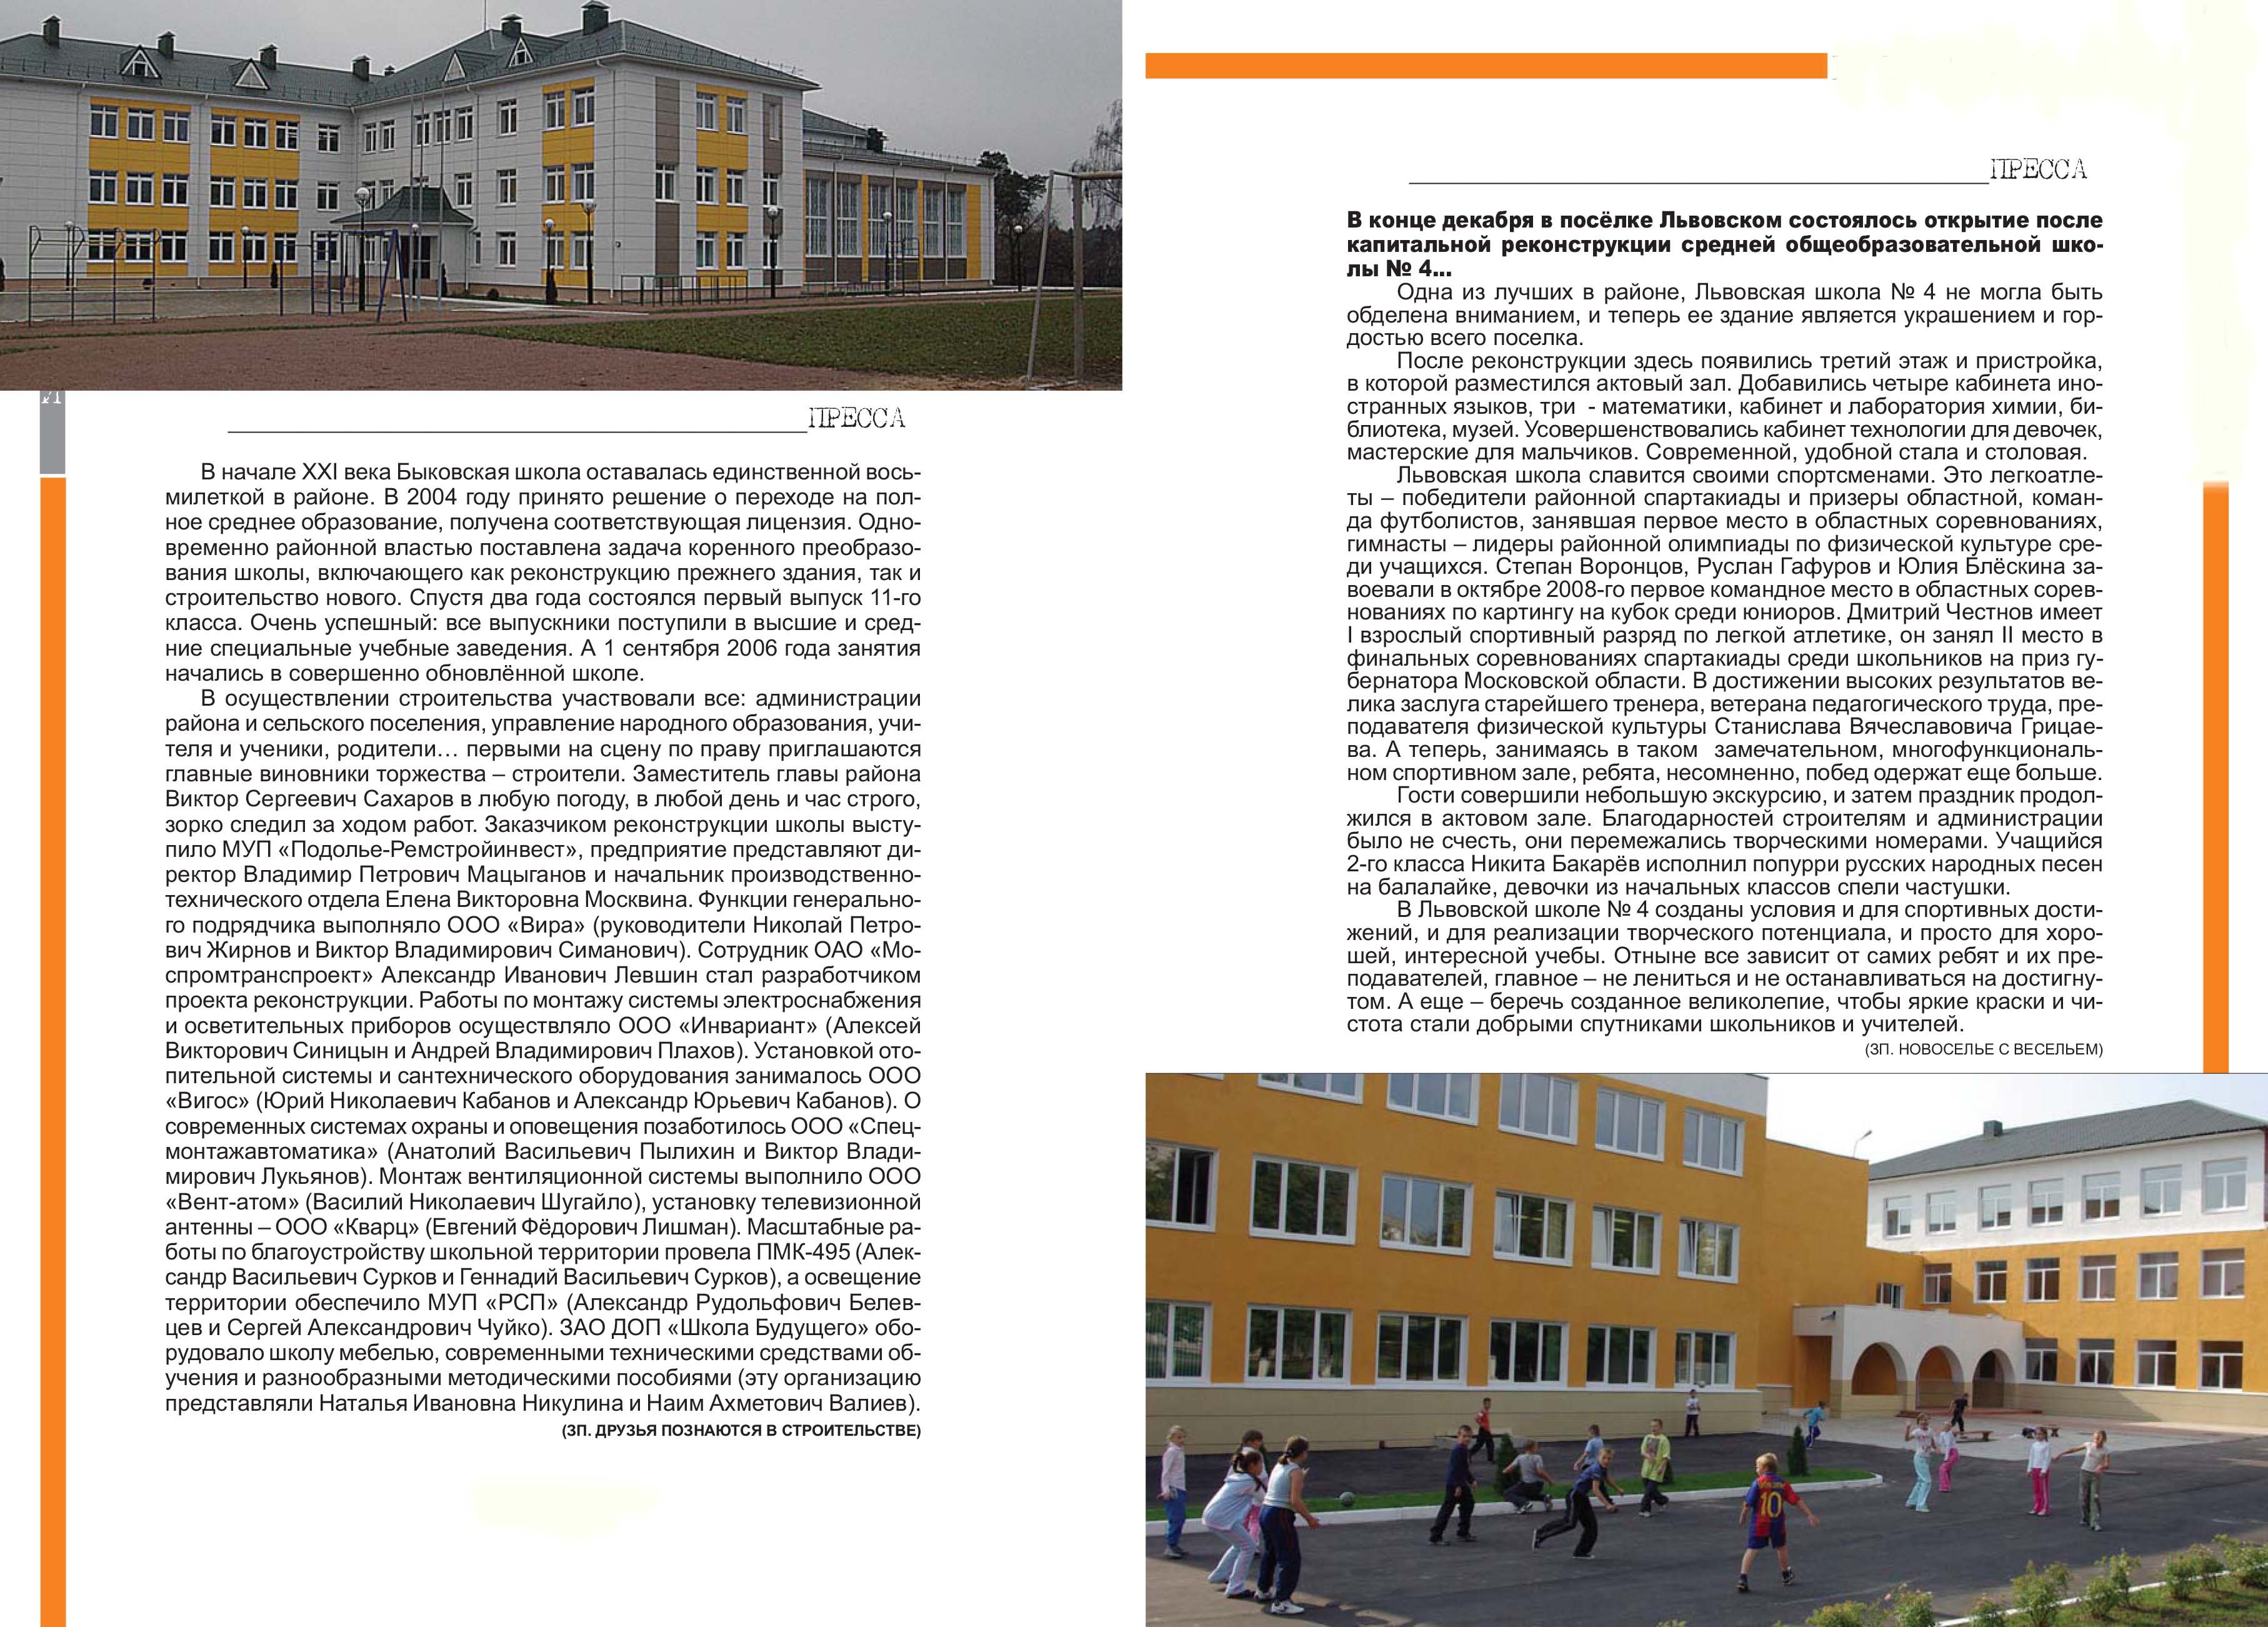 Развитие сферы образования в Подольском районе